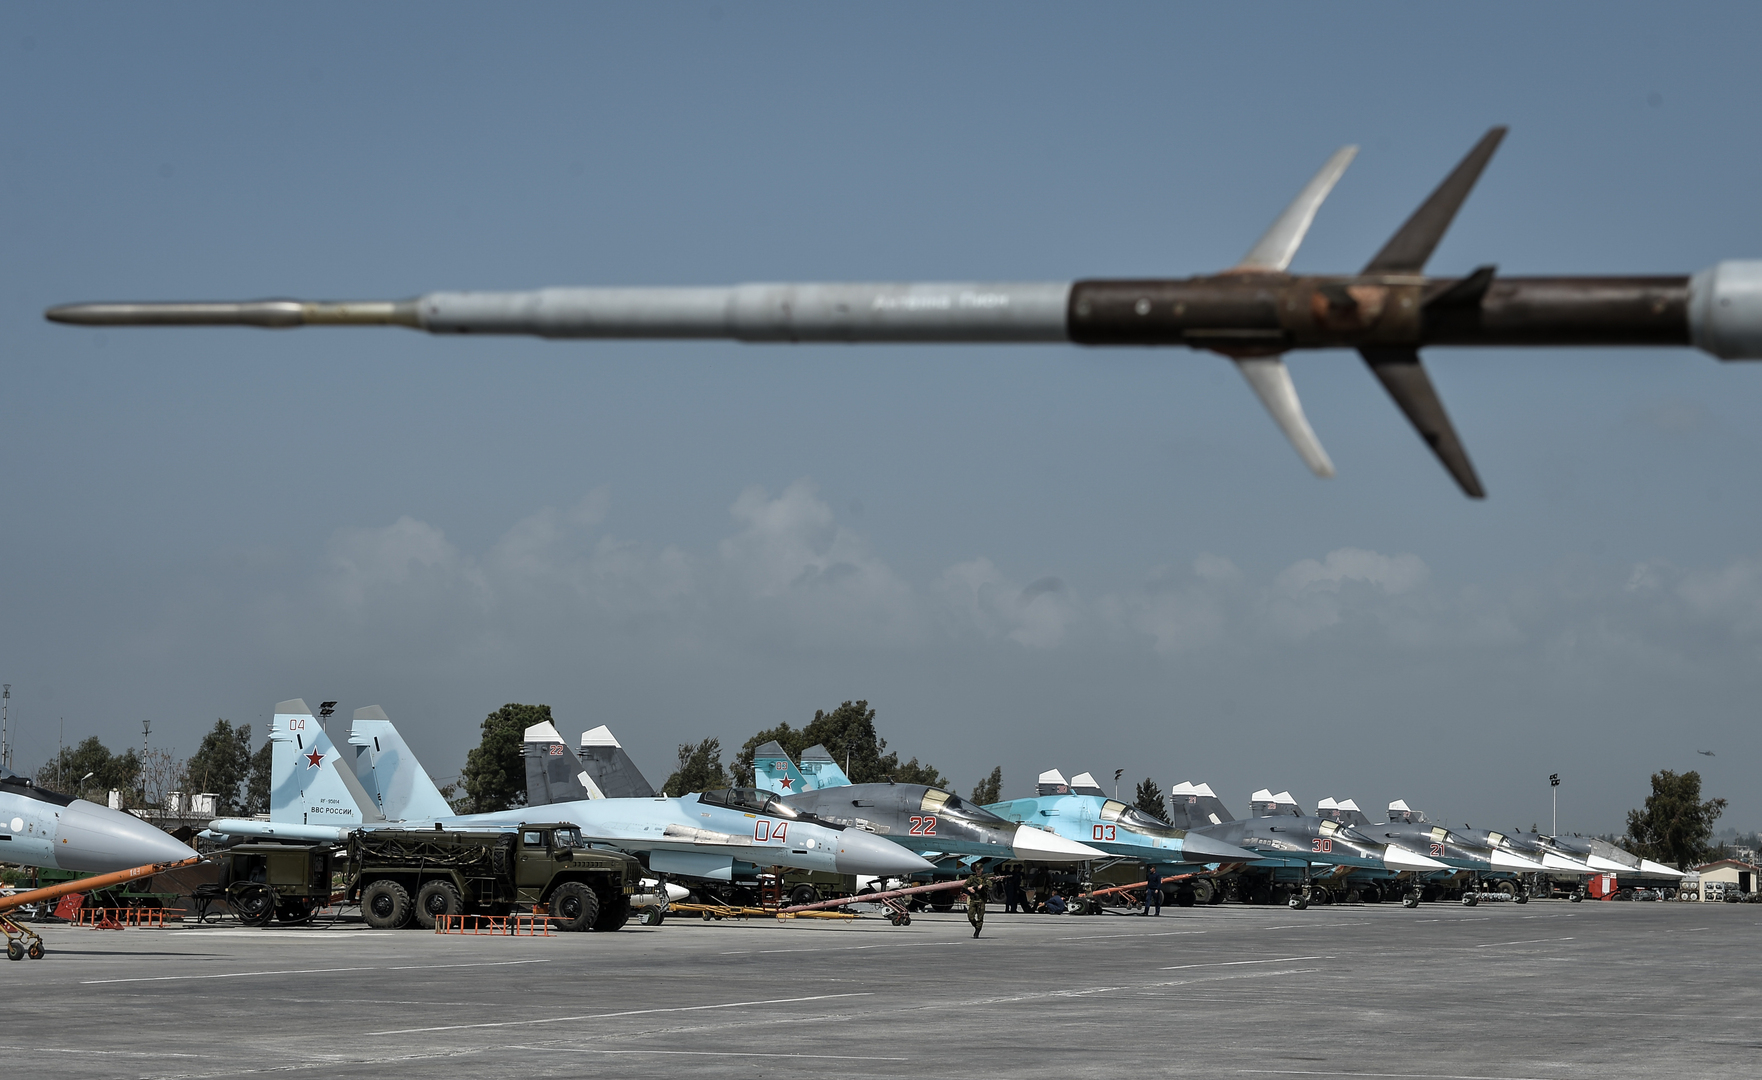 حميميم: طائرات التحالف الغربي تنتهك بروتوكولات عدم الاشتباك في الأجواء السورية